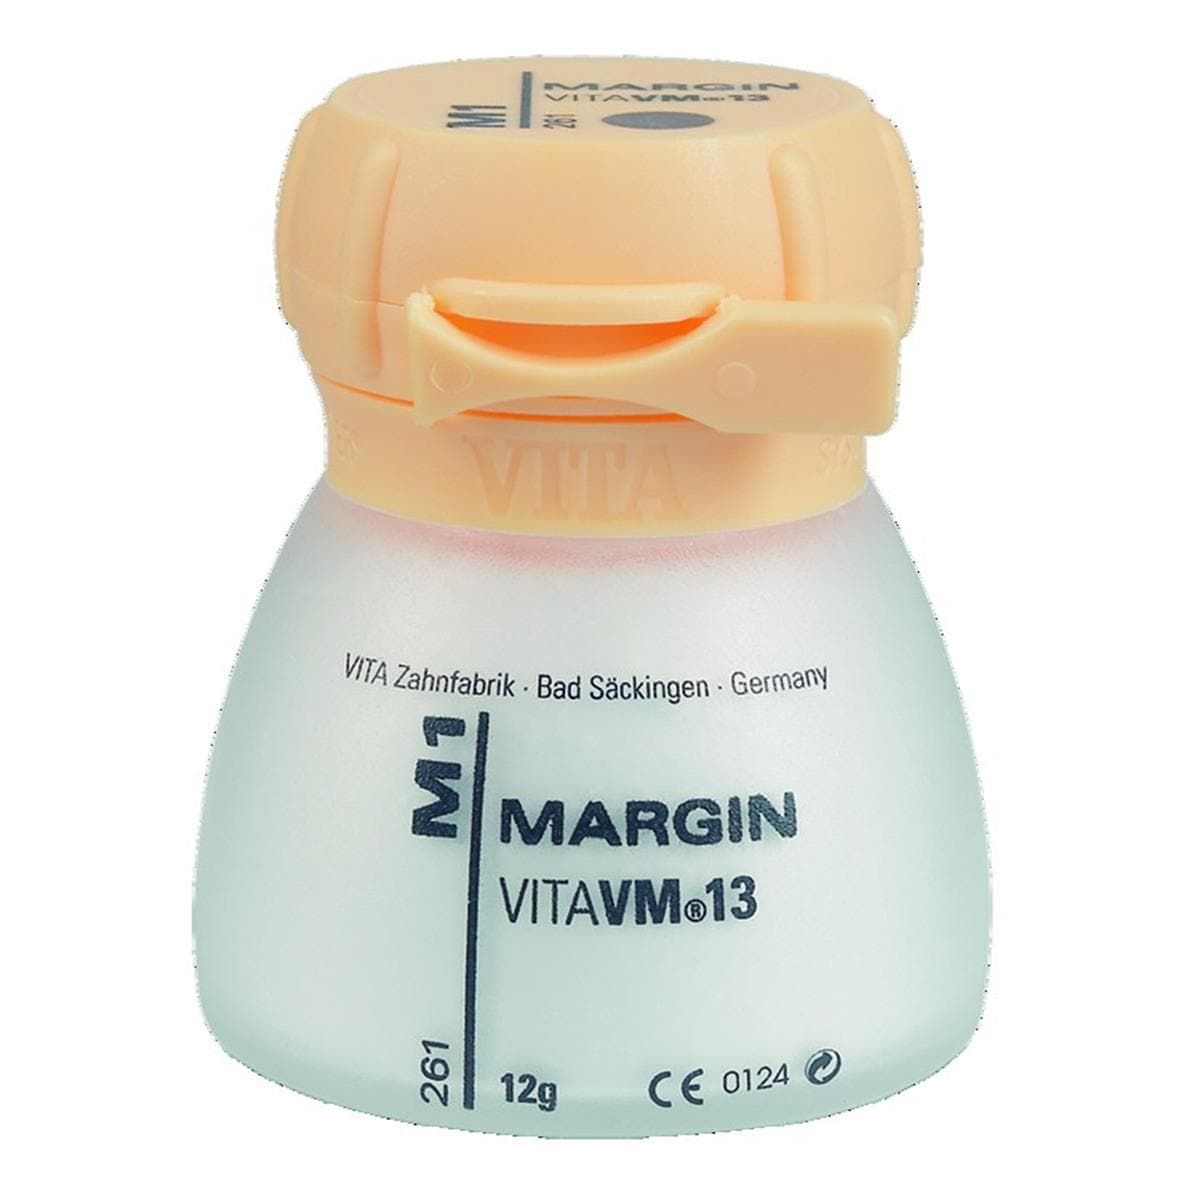 VM13 VITA - Margin - M4 - Le pot de 12 g